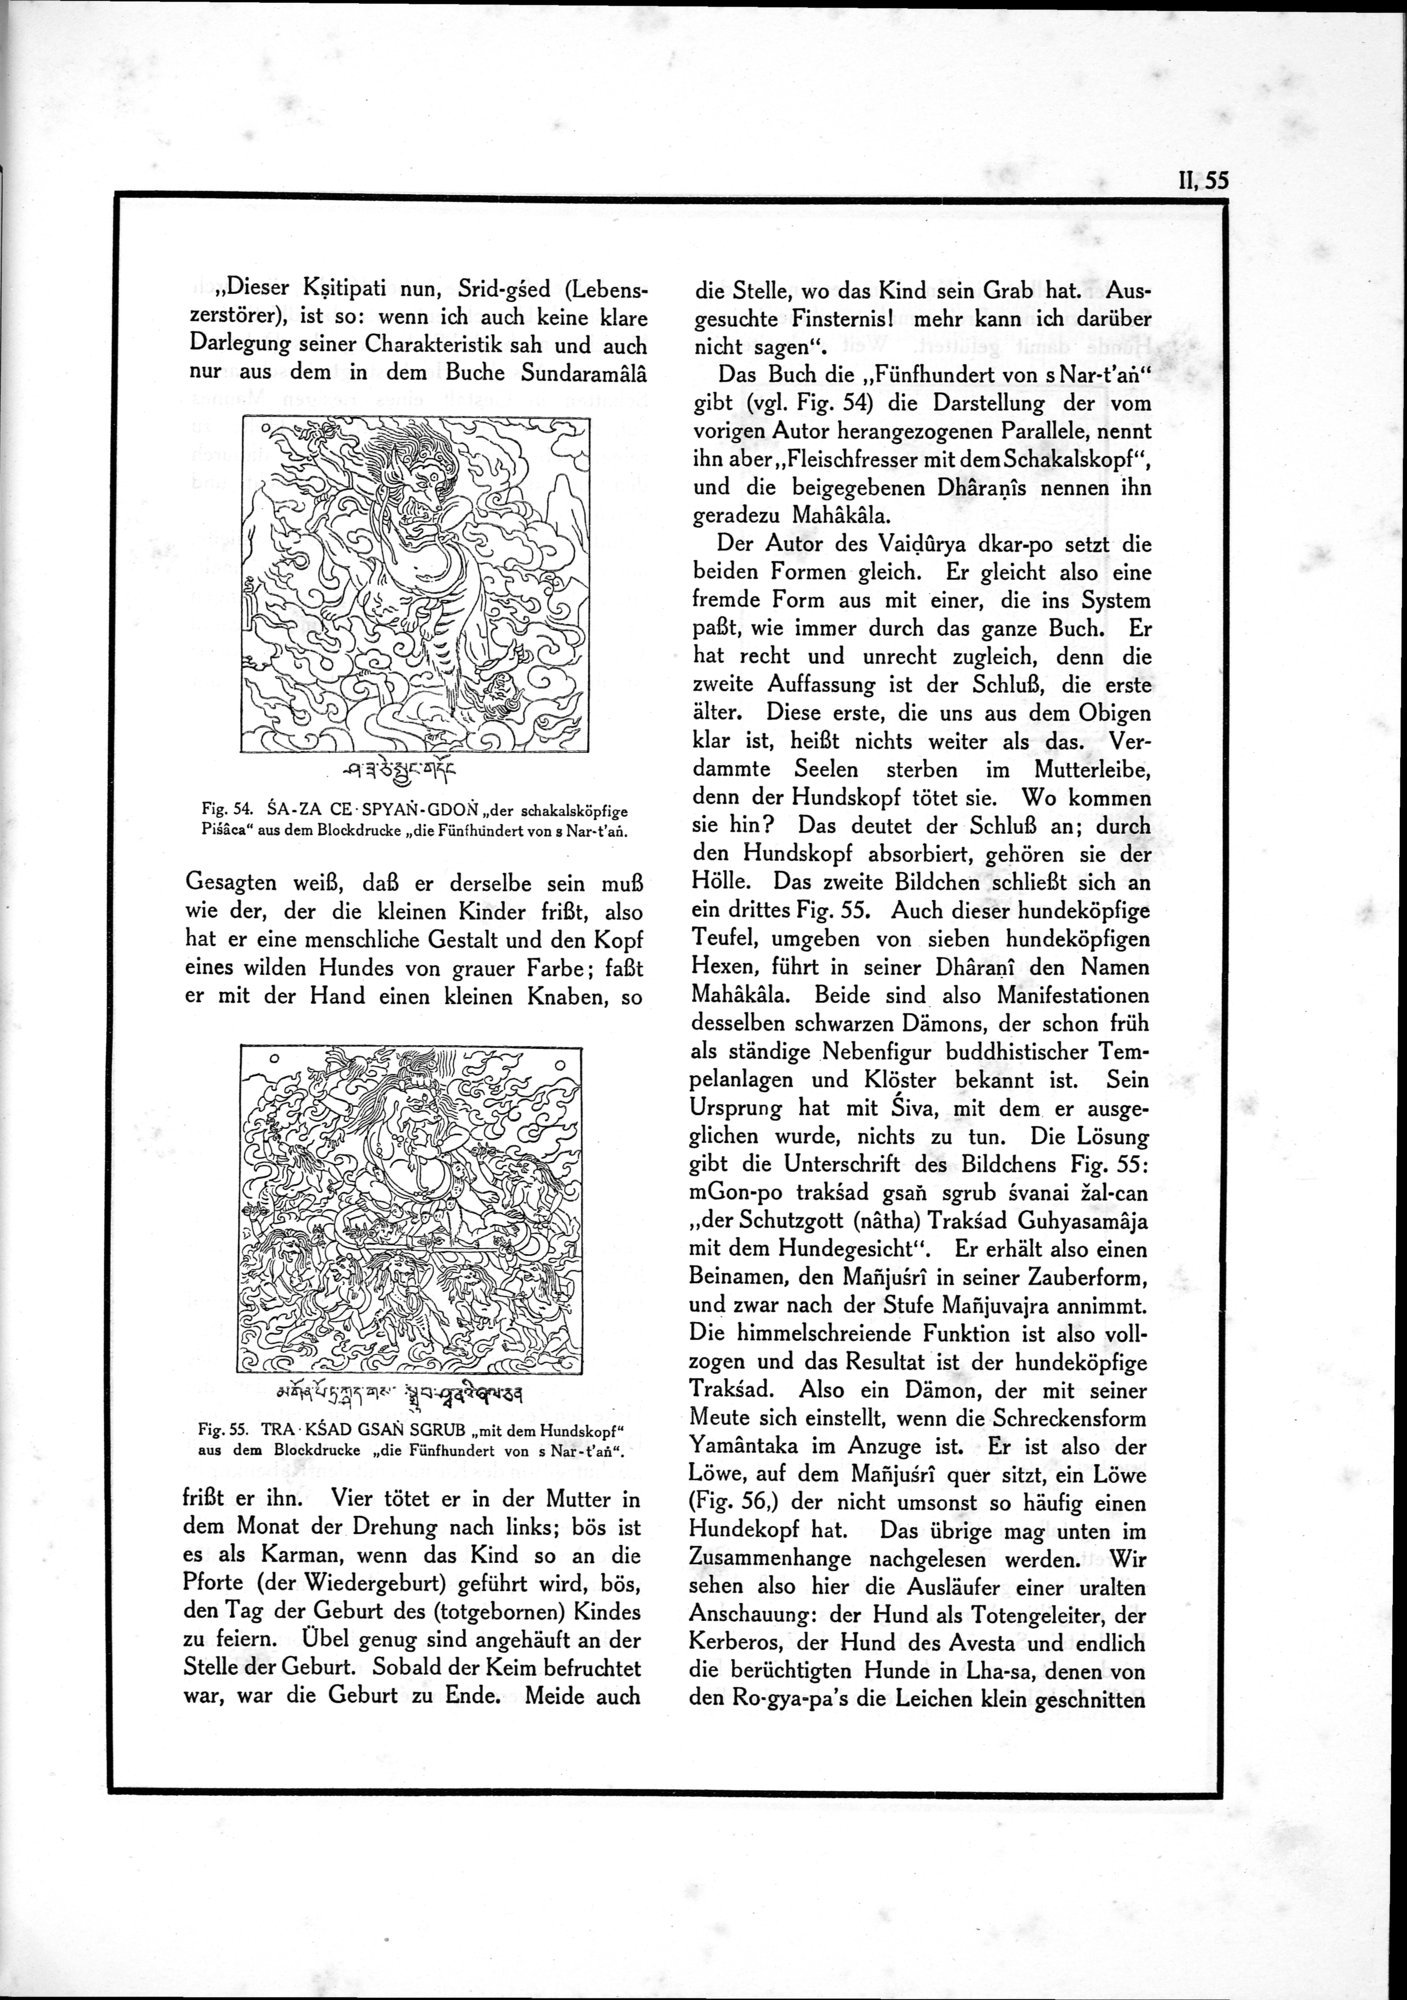 Die Teufel des Avesta und Ihre Beziehungen zur Ikonographie des Buddhismus Zentral-Asiens : vol.1 / Page 511 (Grayscale High Resolution Image)